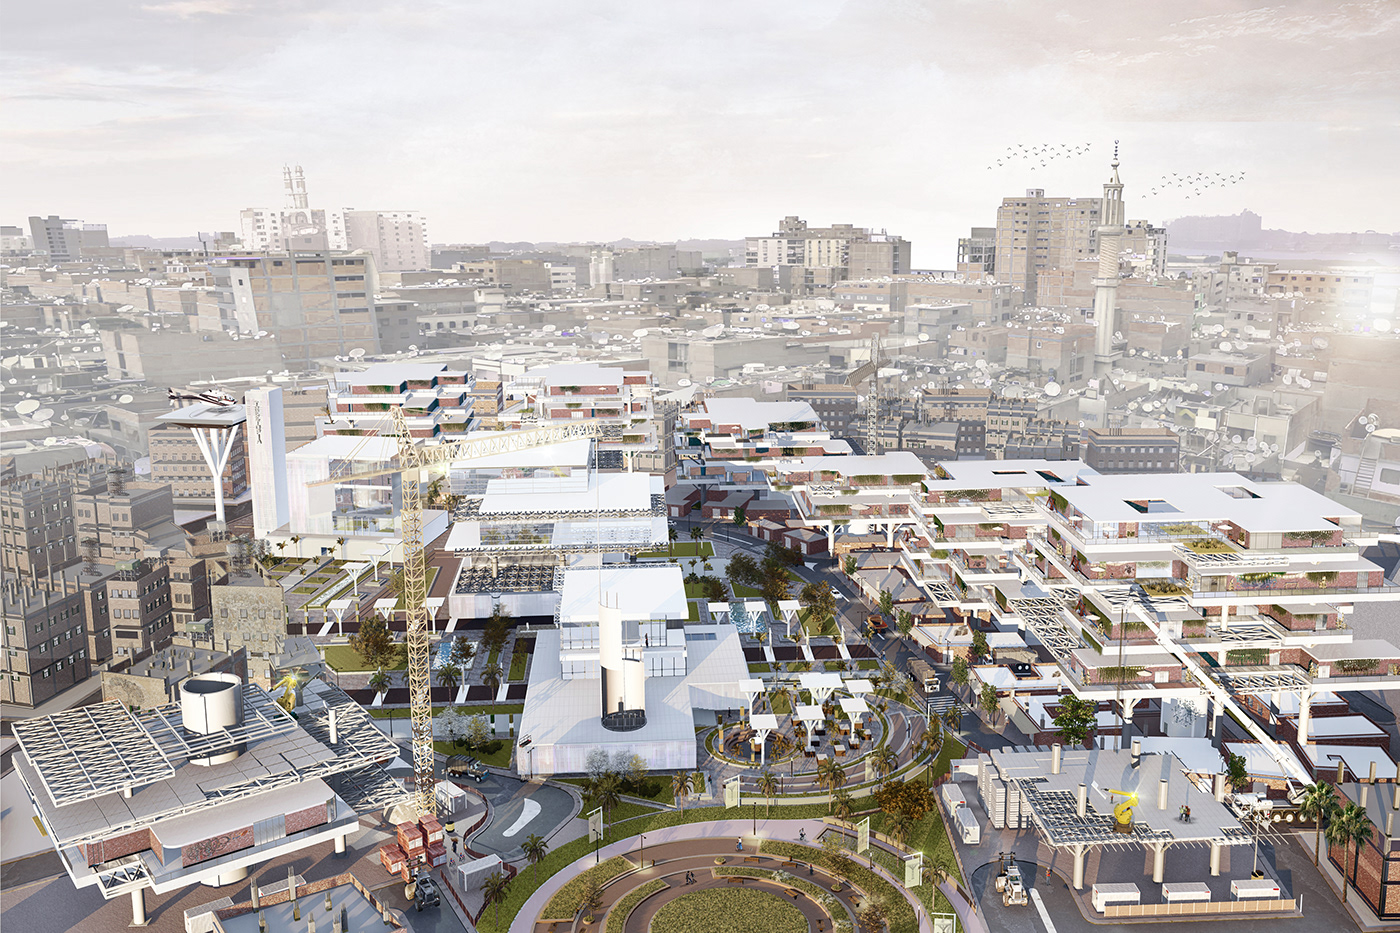 Flexibility architecture slums visulaization Render Urban Design parametric architecture Landscape parametric design